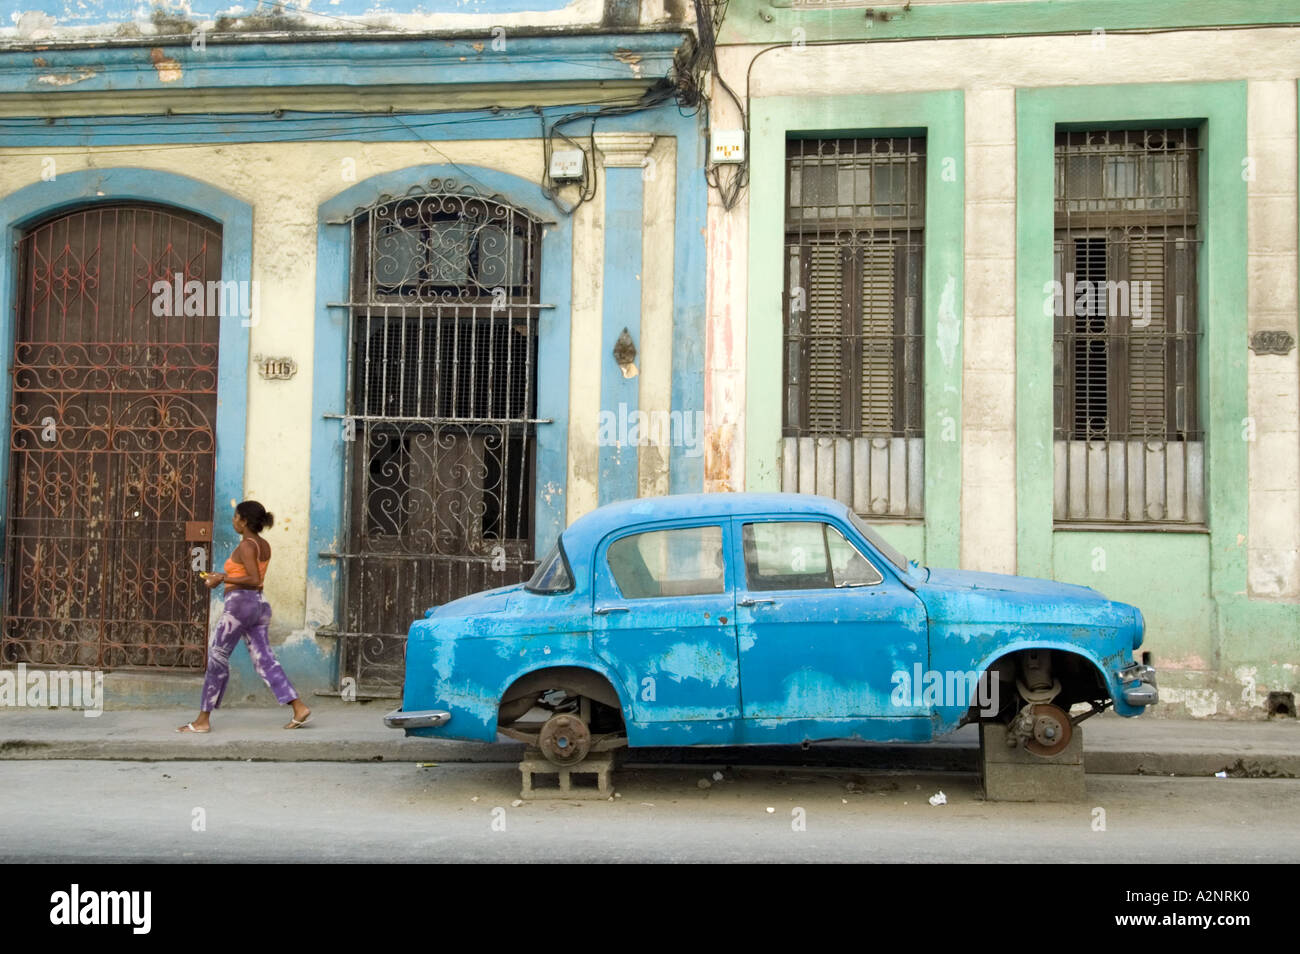 Decrépito viejo coche sin ruedas descansando sobre bloques, La Habana, Cuba Foto de stock